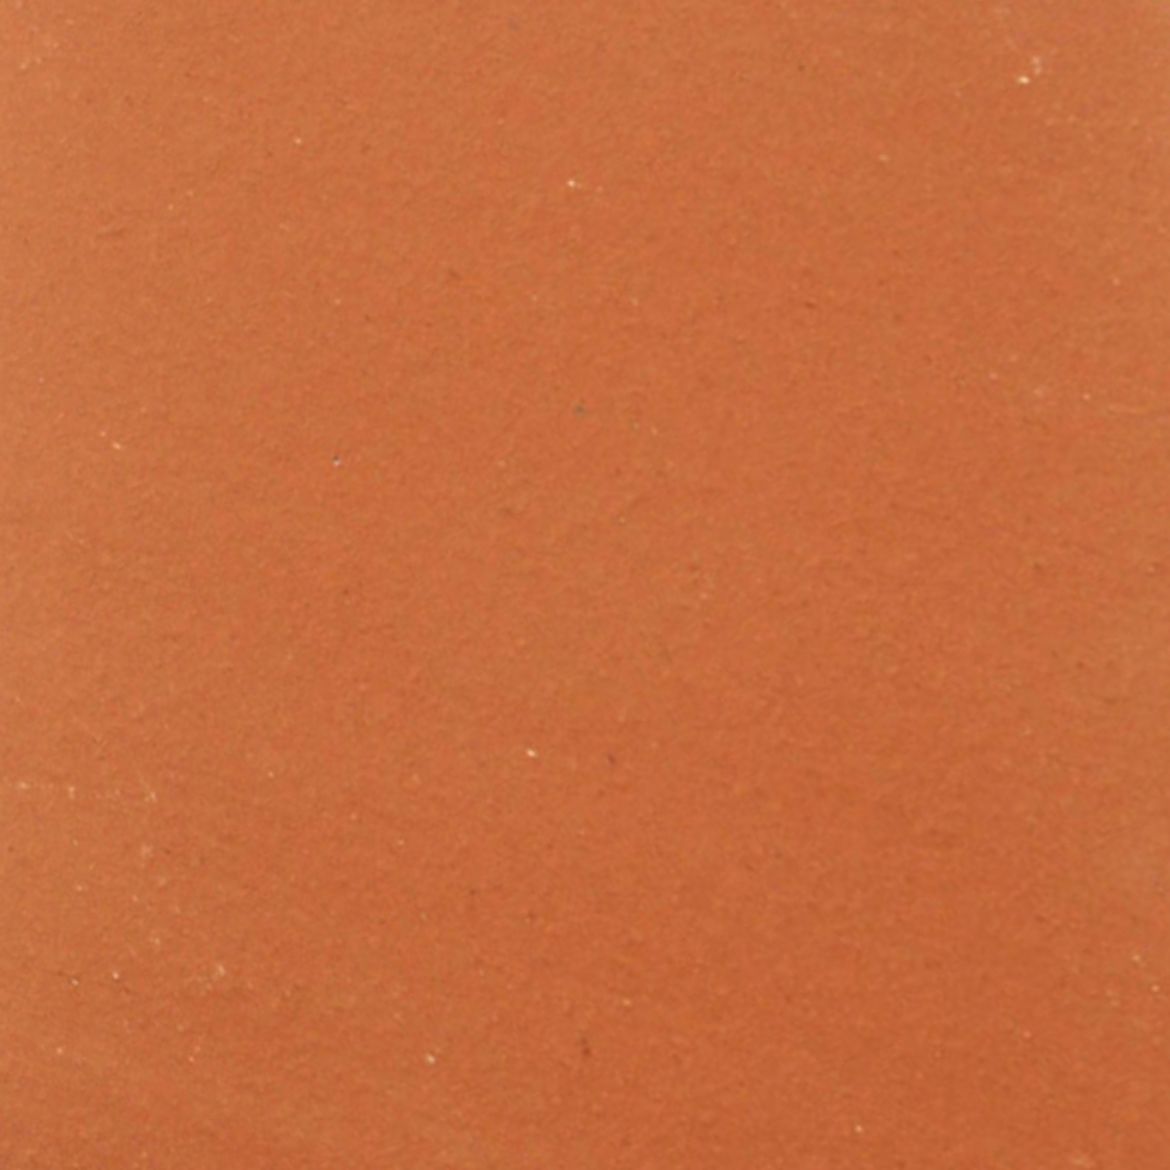 Billede af Rustikklinke Teglrød 19,2x19,2 cm